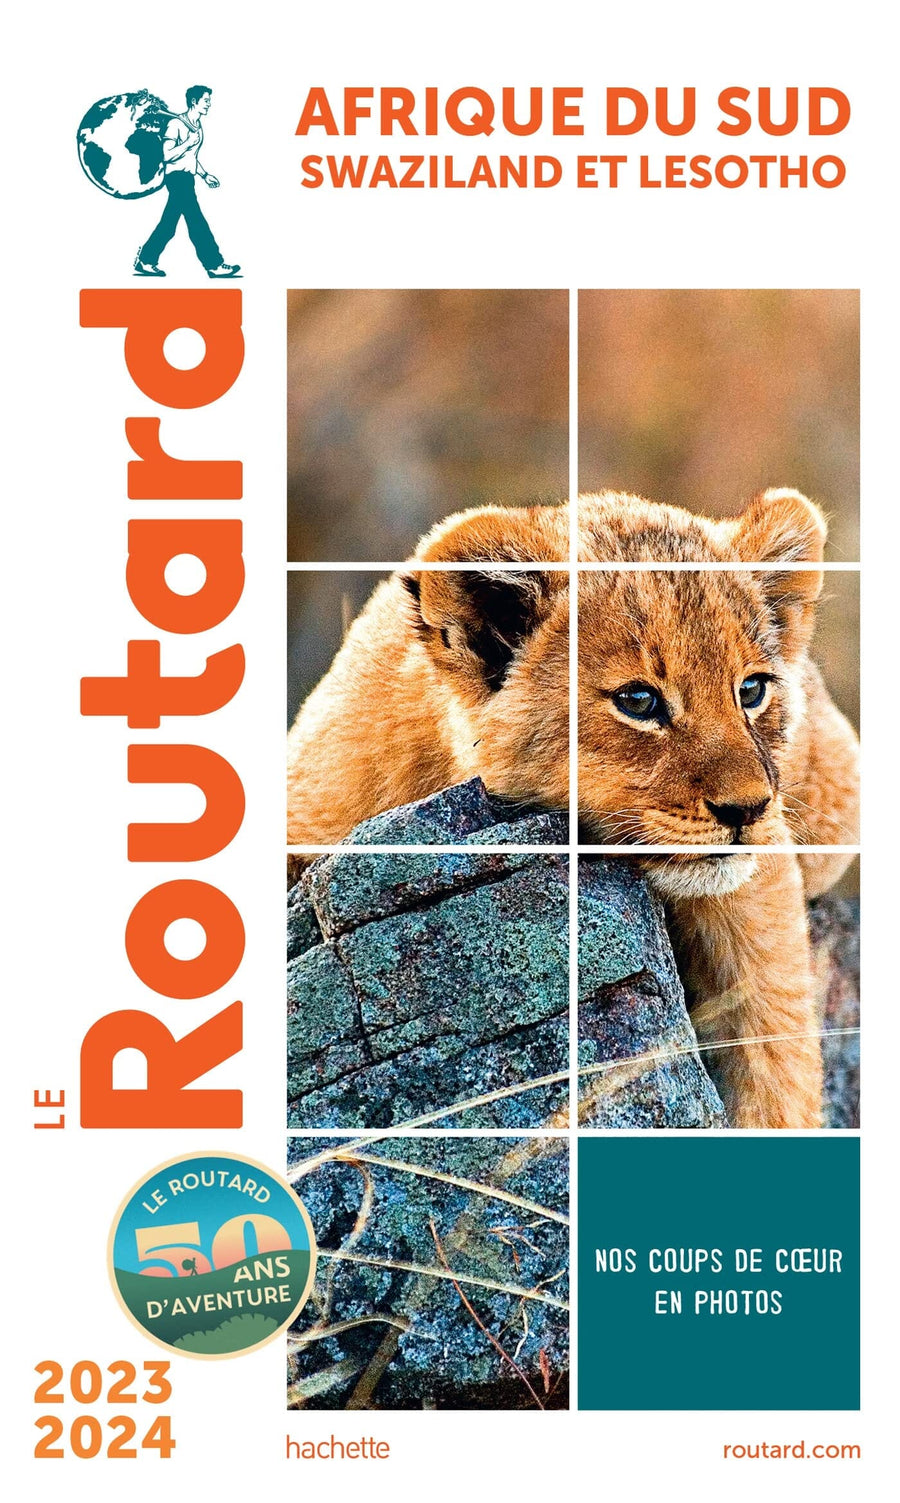 Guide du Routard - Afrique du Sud, Lesotho, Swaziland 2023/24 | Hachette guide de voyage Hachette 